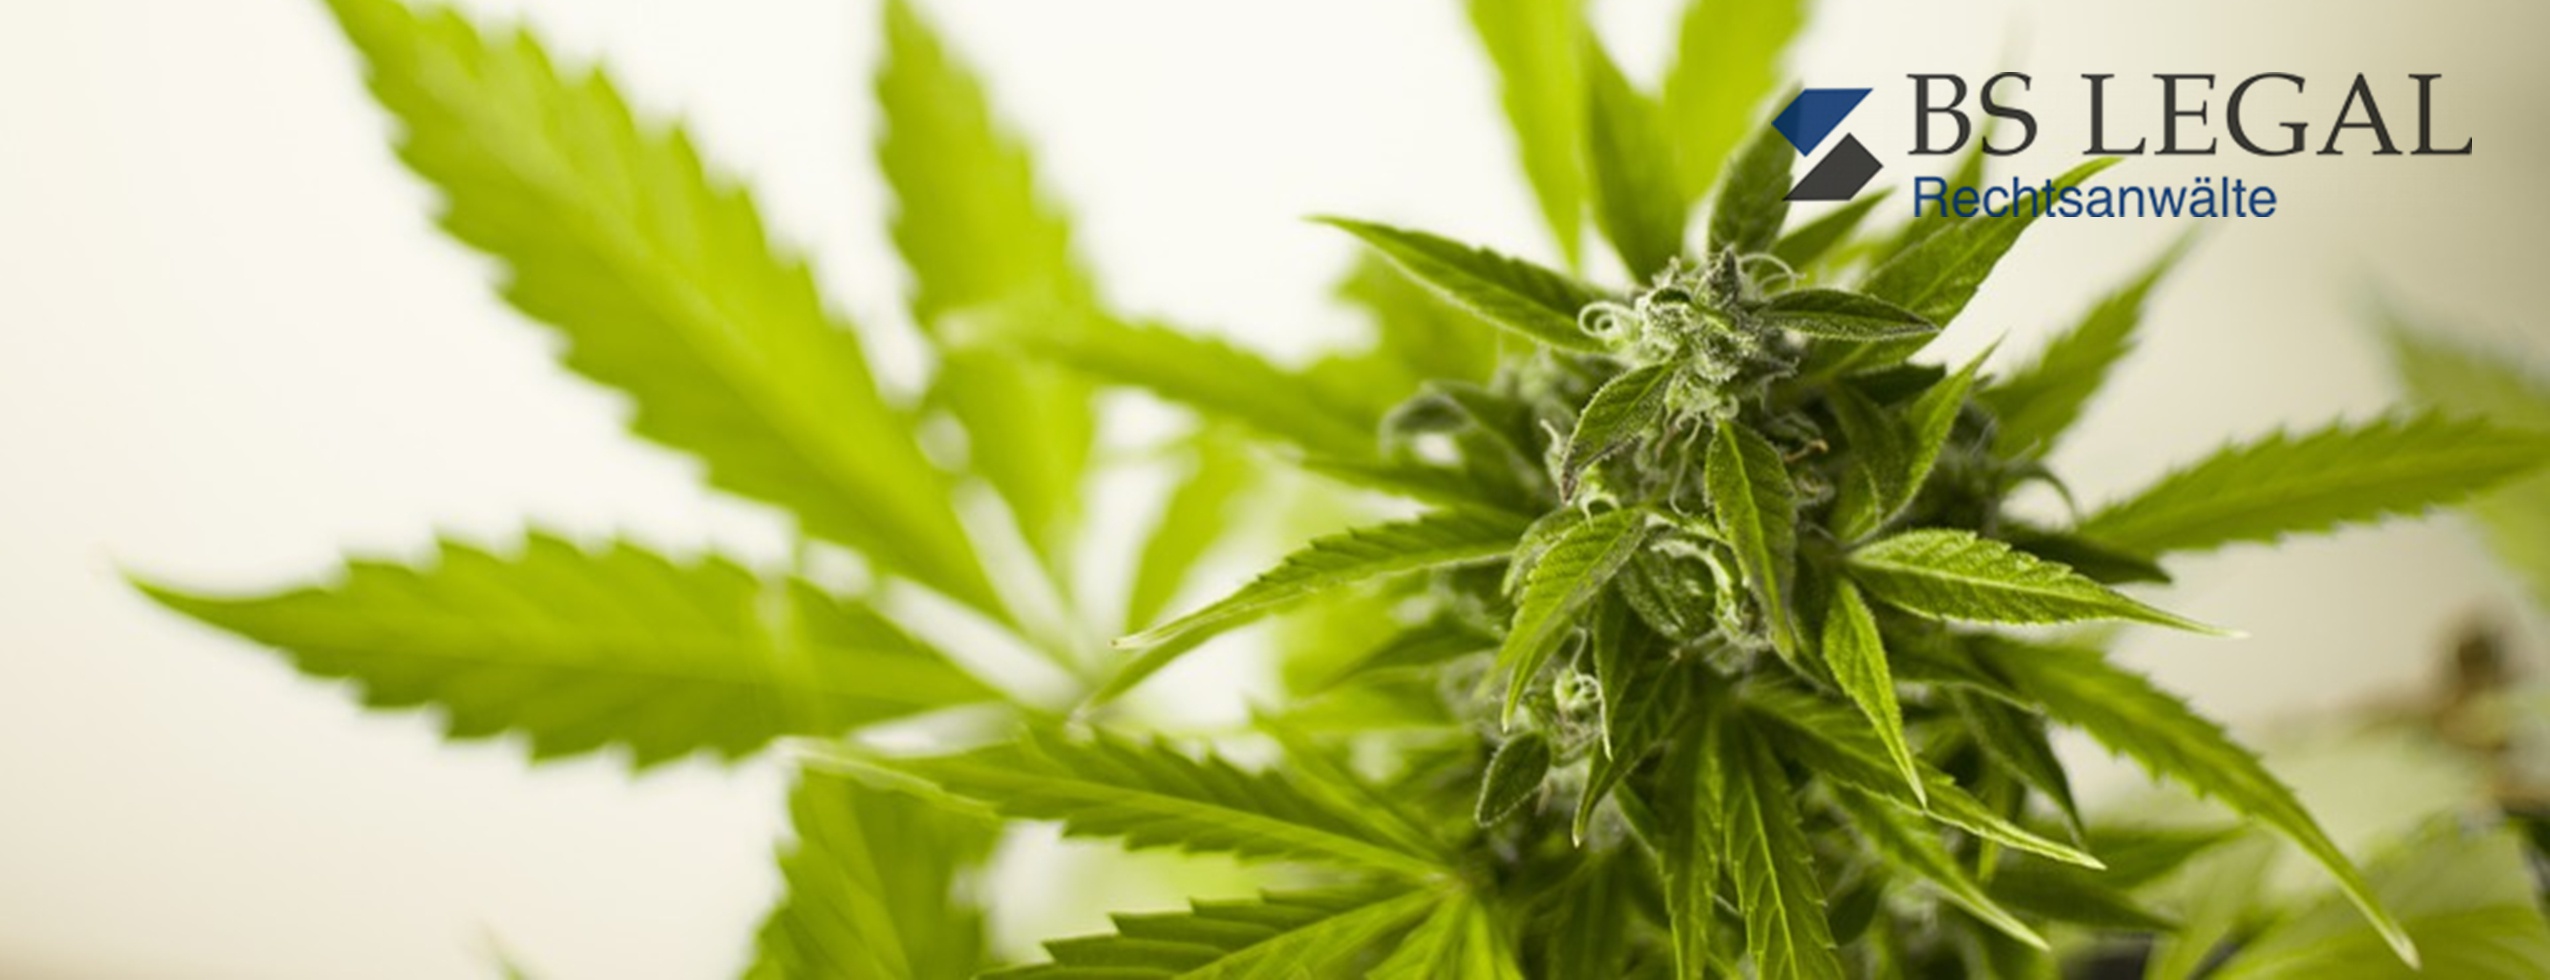 Handel mit Cannabis – auch bei Zertifizierung oder geringem Wirkstoffgehalt nur zu gewerblichen oder wissenschaftlichen Zwecken zulässig